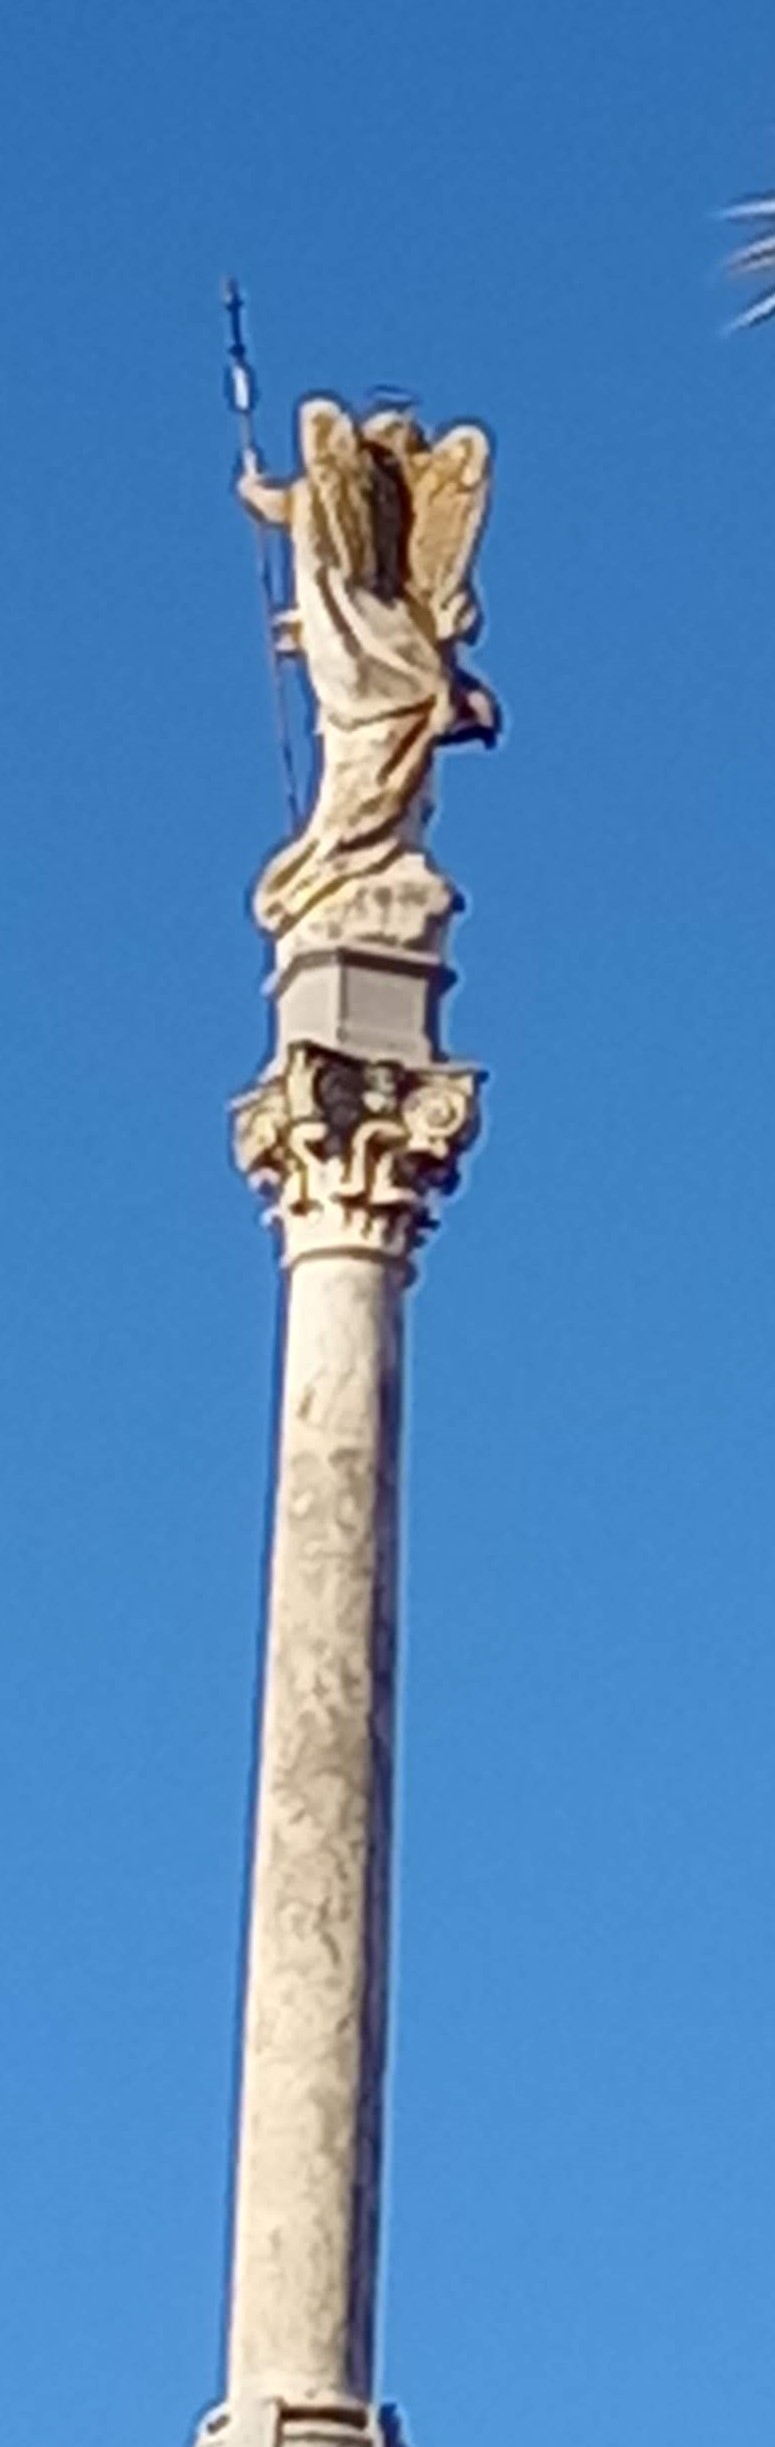 Columna con estatua